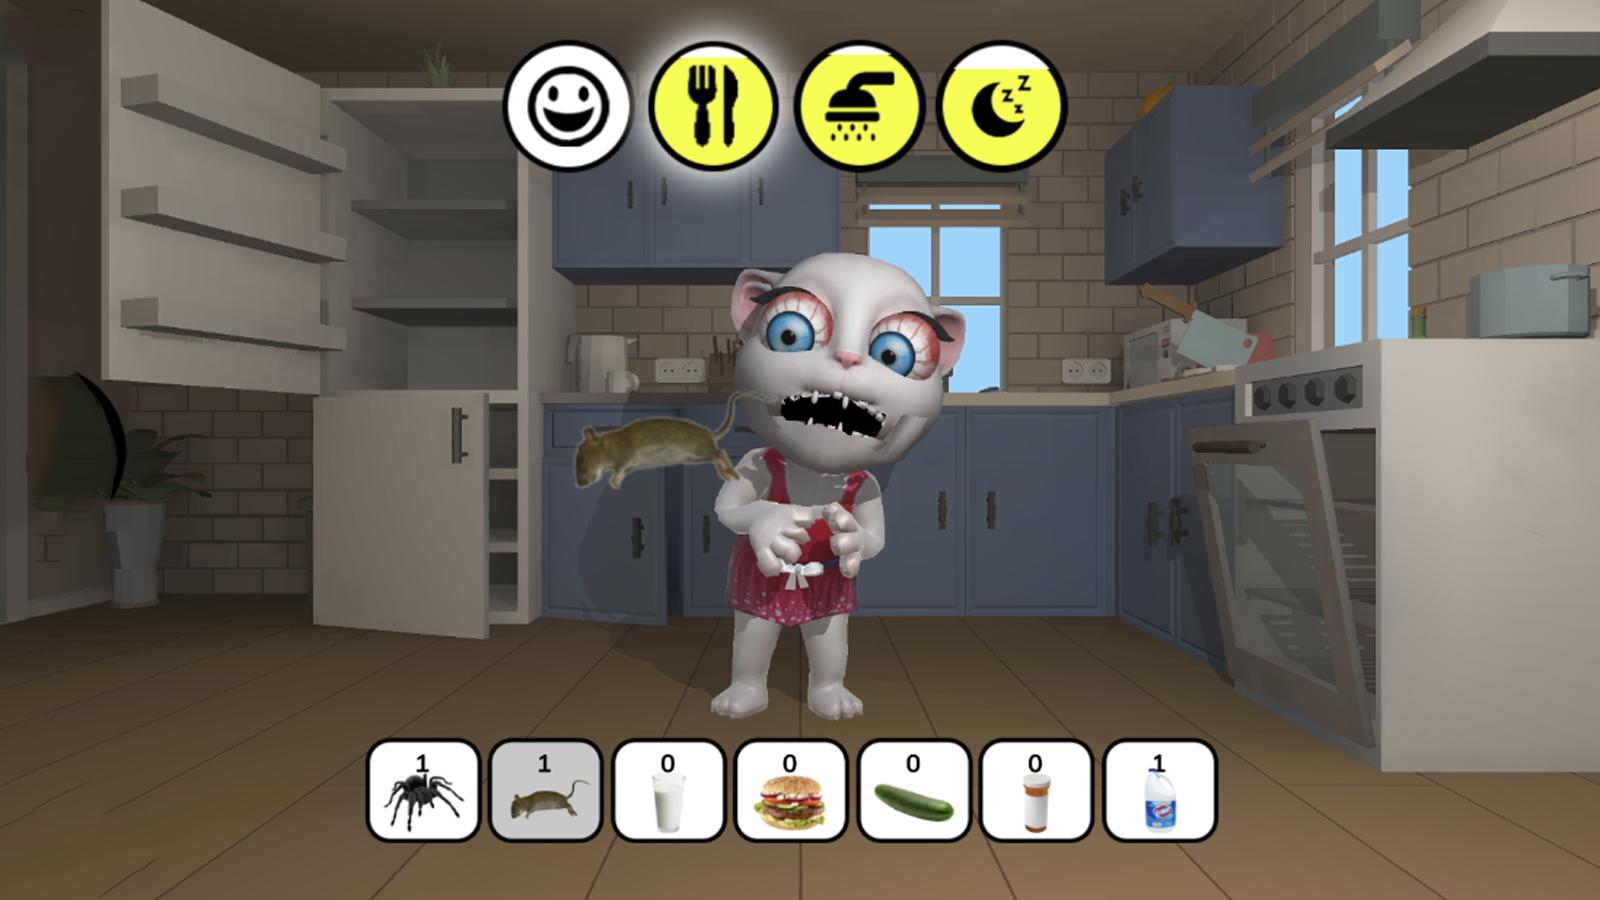 Scary Teacher 3D (GameLoop) para Windows - Baixe gratuitamente na